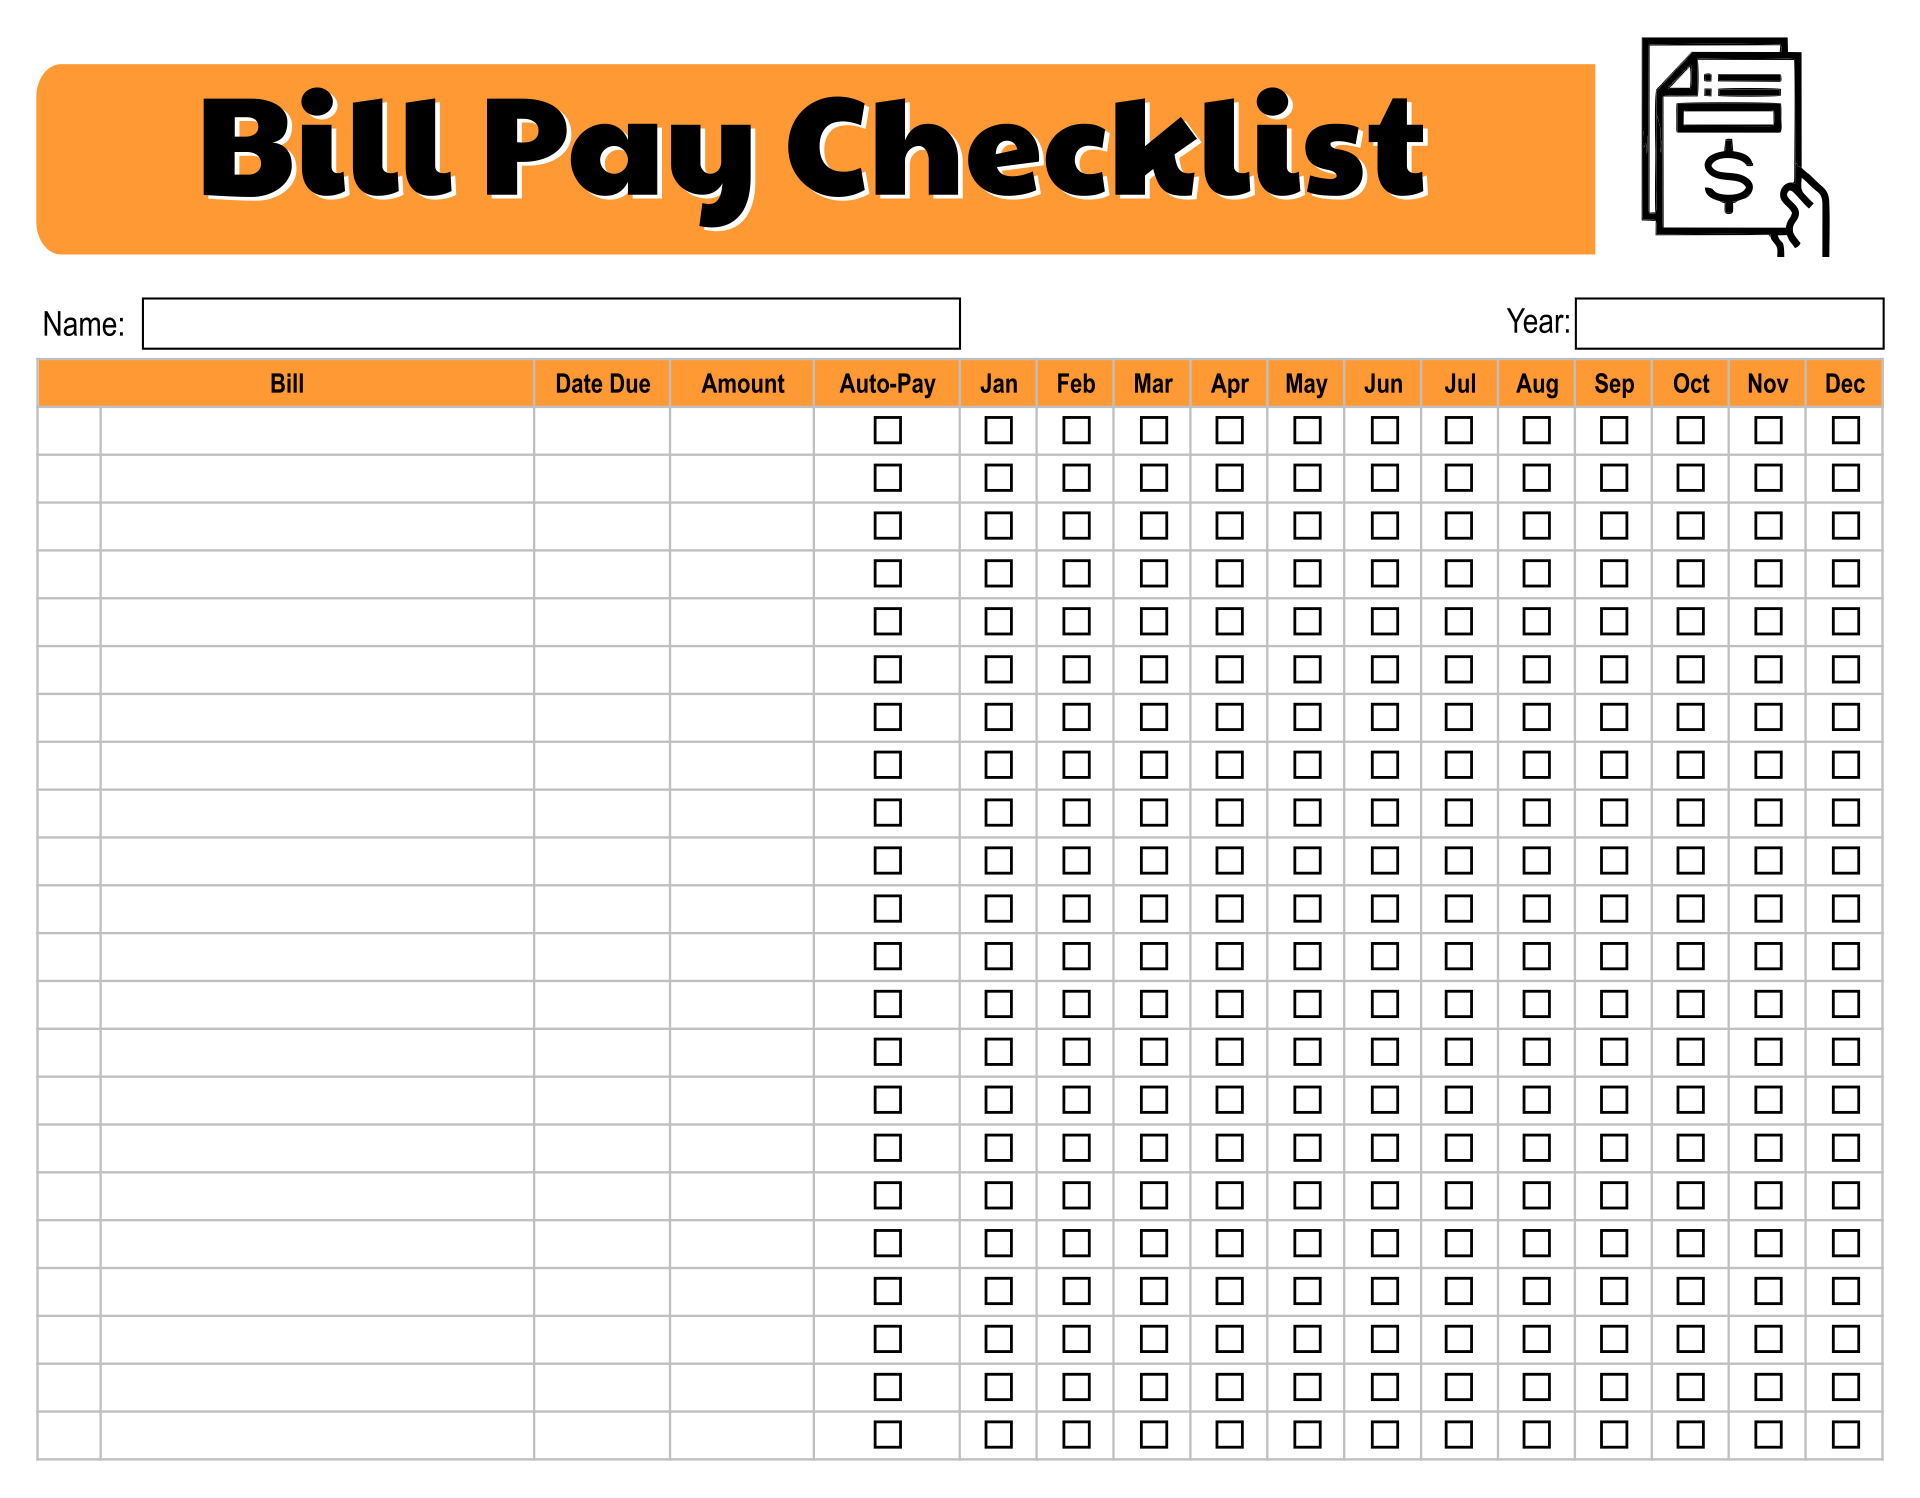 Monthly Bills Checklist Template